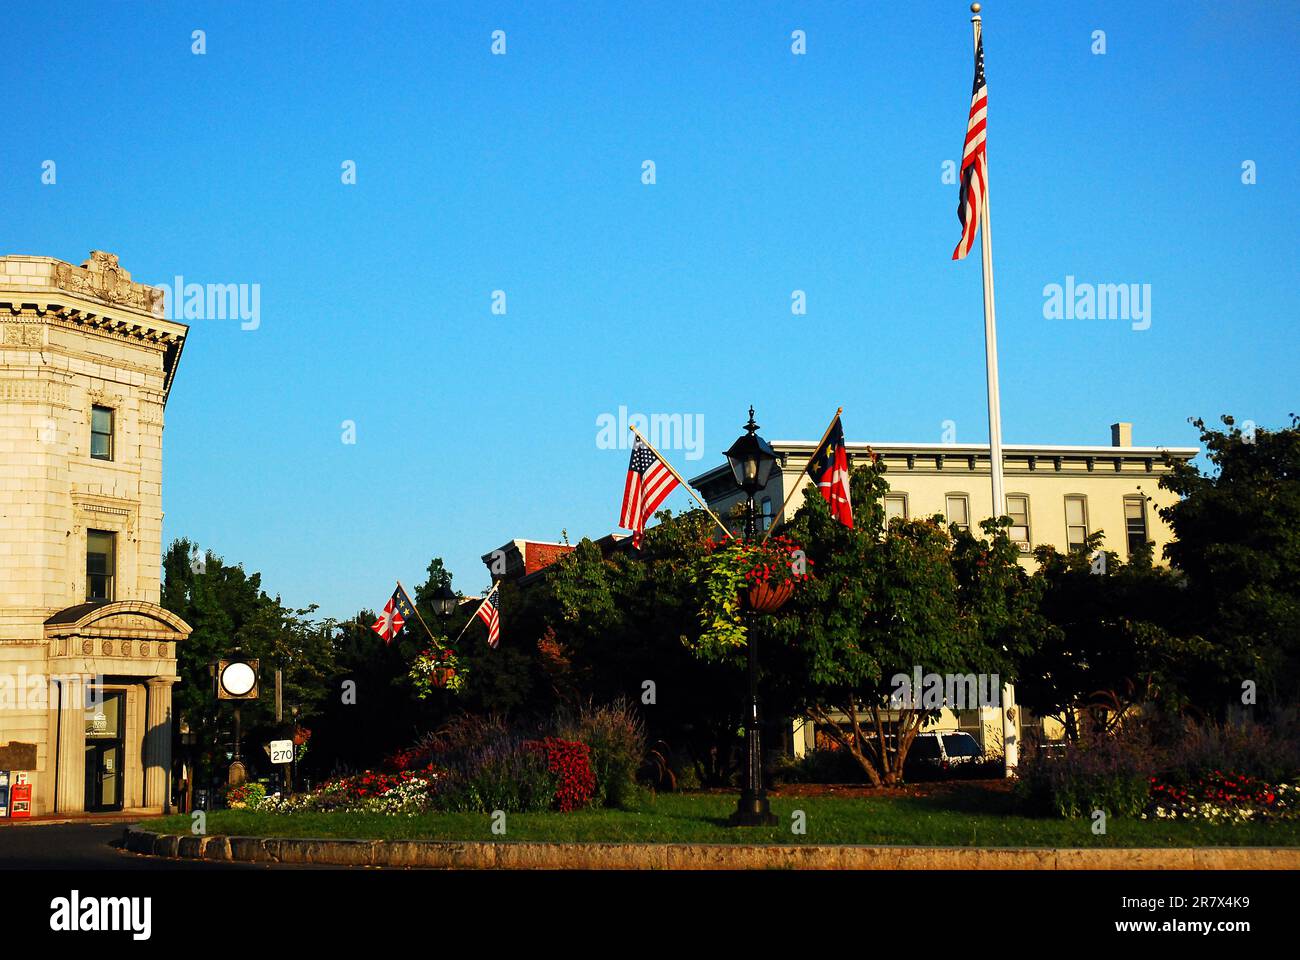 Un drapeau américain se dresse dans un jardin à Lincoln Square, un parc situé au cœur du centre-ville de Gettysburg, en Pennsylvanie Banque D'Images